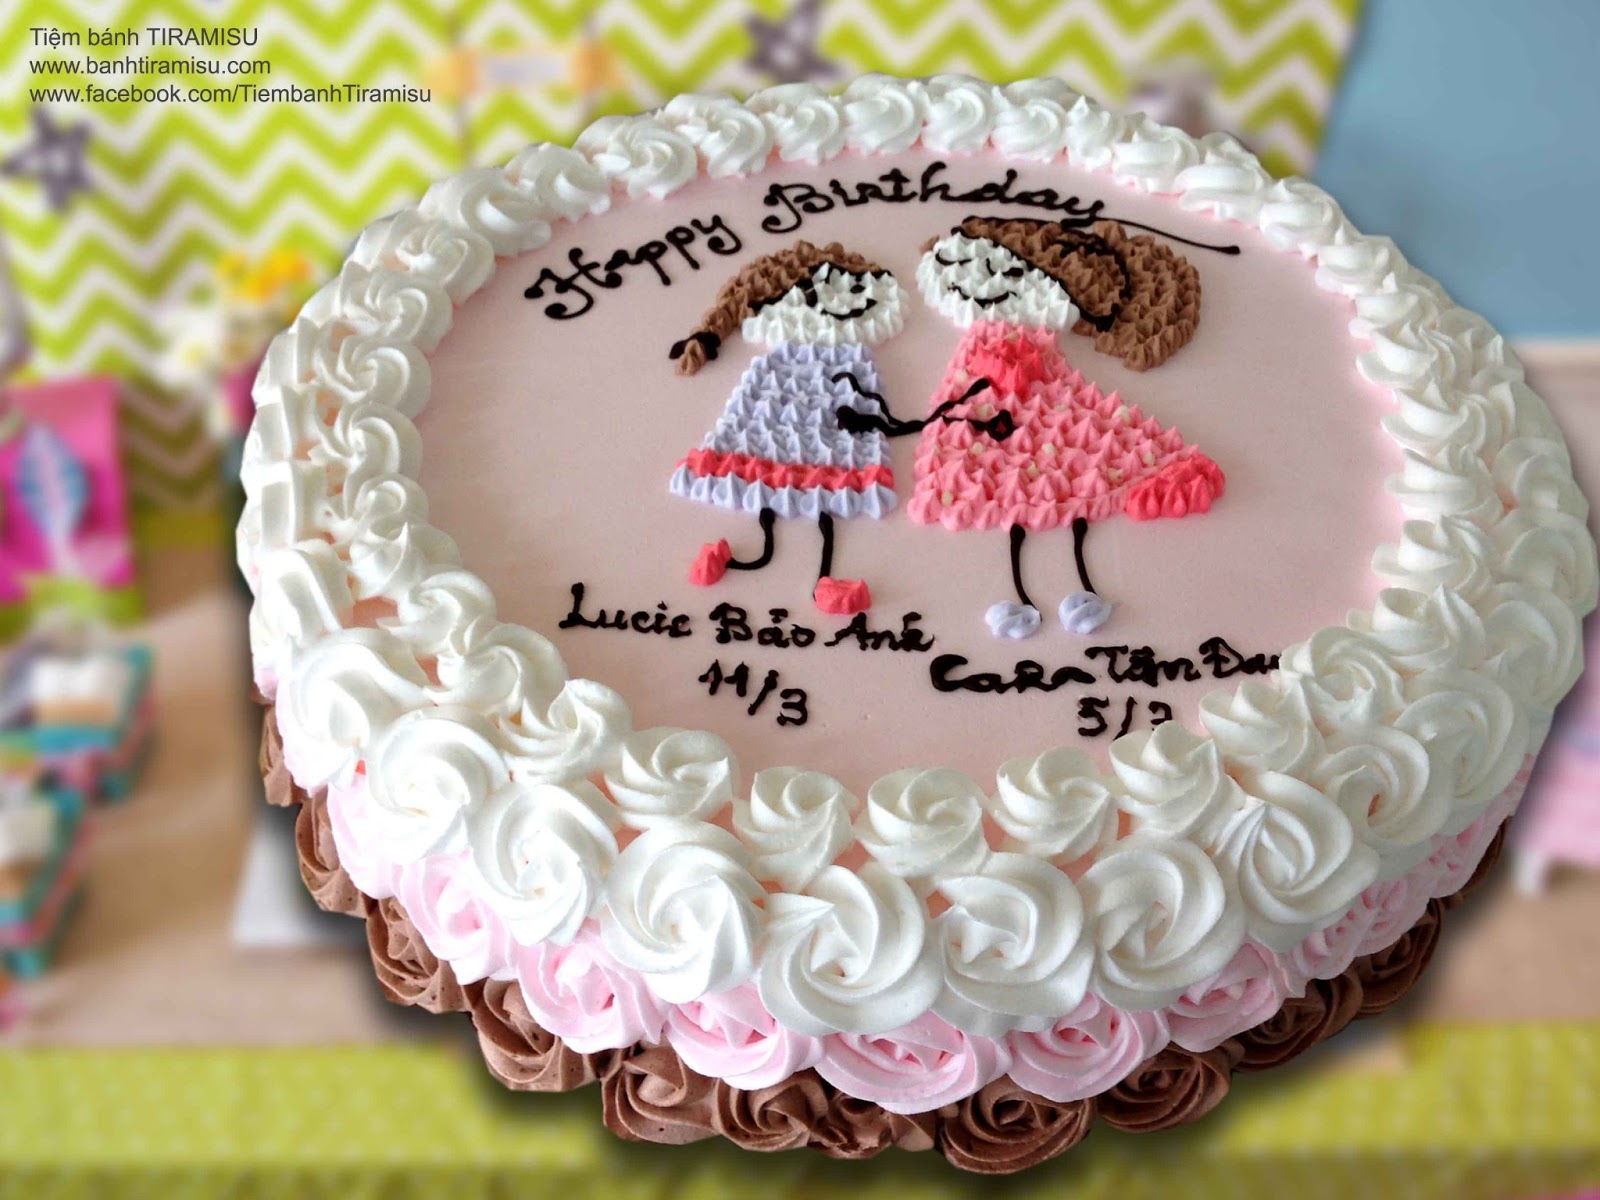 Tiệm bánh Tiramisu "MISS KHƯƠNG" Bánh sinh nhật hồng đáng